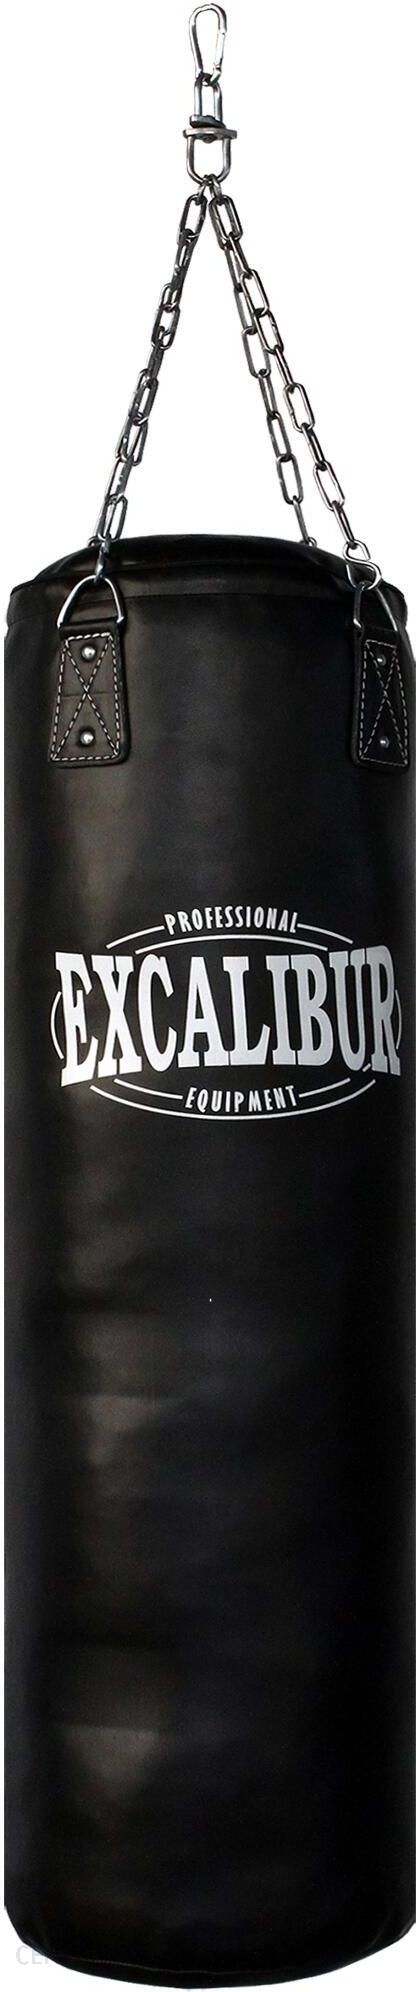 Excalibur Boxing Worek Treningowy Maxxus Boxsack Pro 120 34kg Biały Czarny  - Ceny i opinie